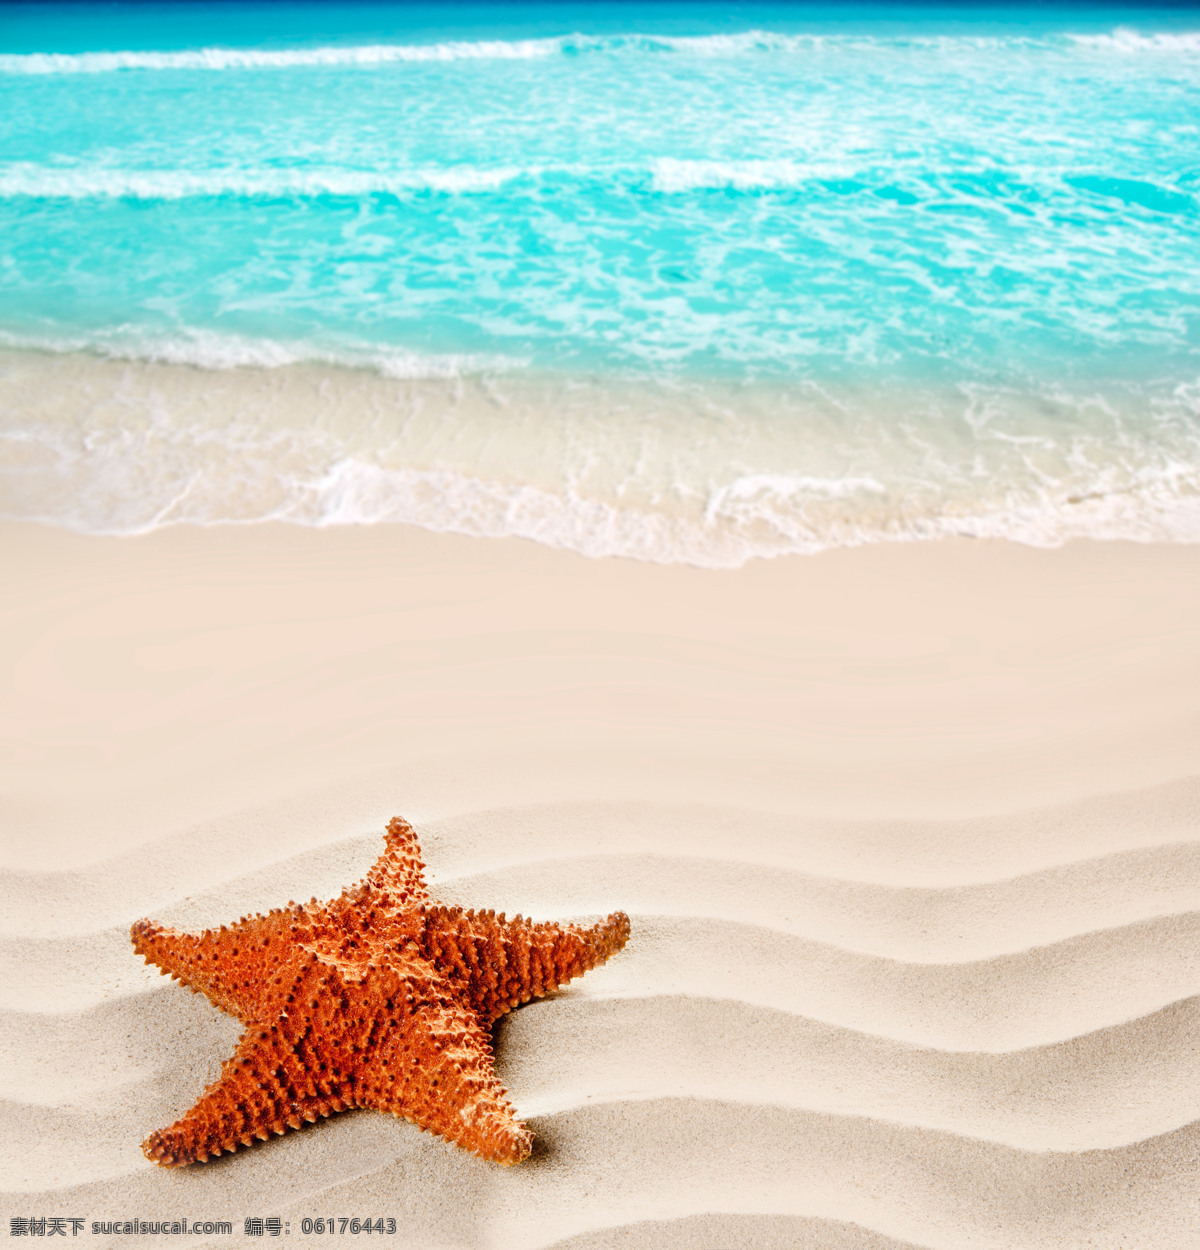 美丽 夏日 海滩 夏日海滩 夏季风景 美丽风景 沙滩美景 大海 海面 海星 大海图片 风景图片